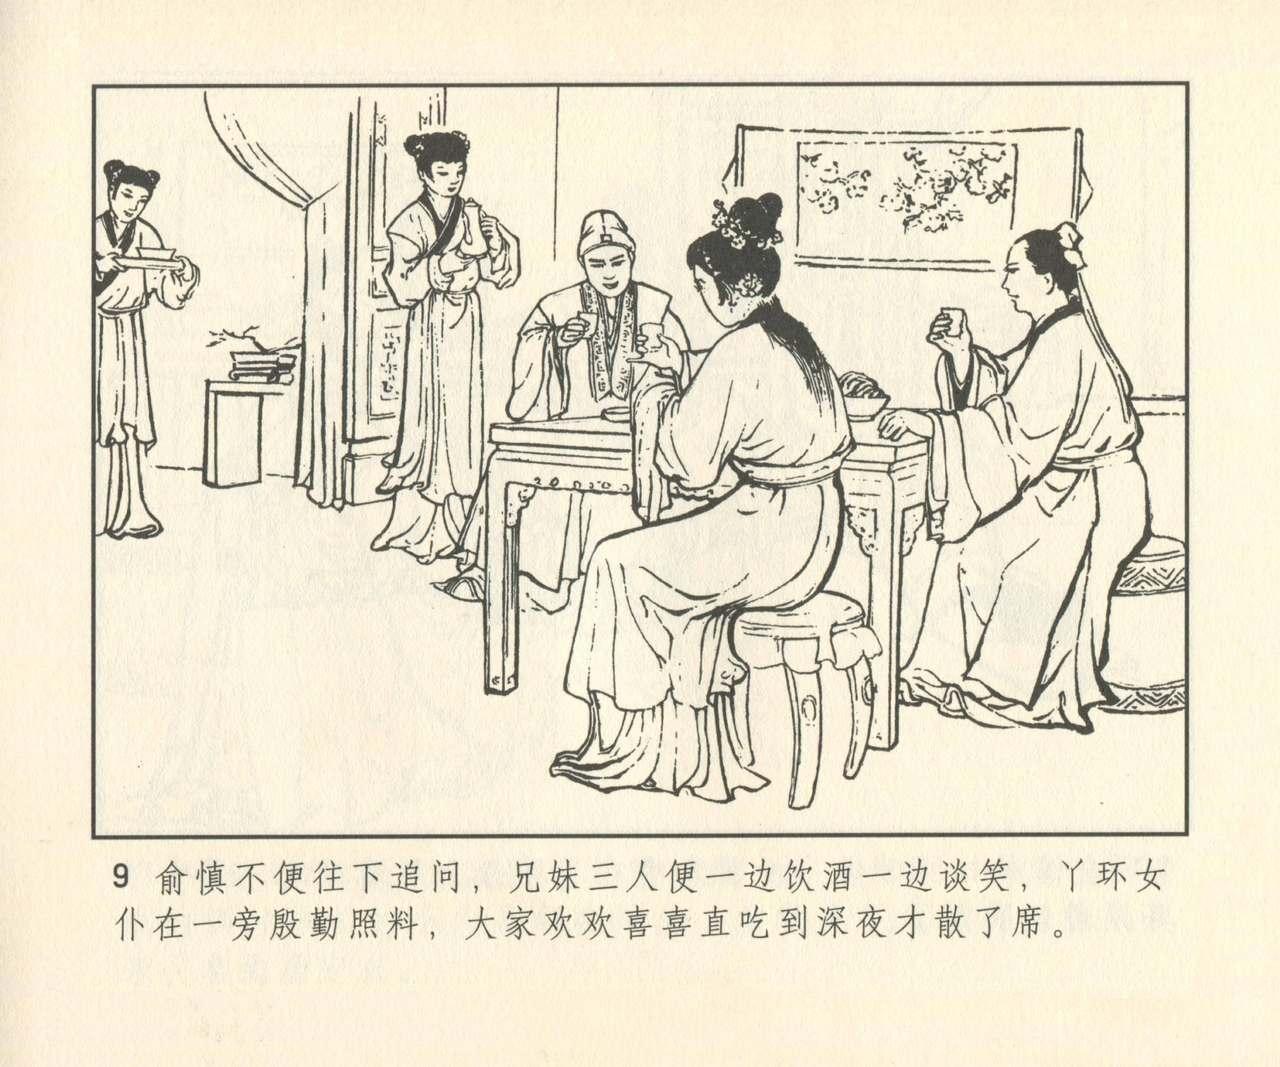 聊斋志异 张玮等绘 天津人民美术出版社 卷二十一 ~ 三十 289